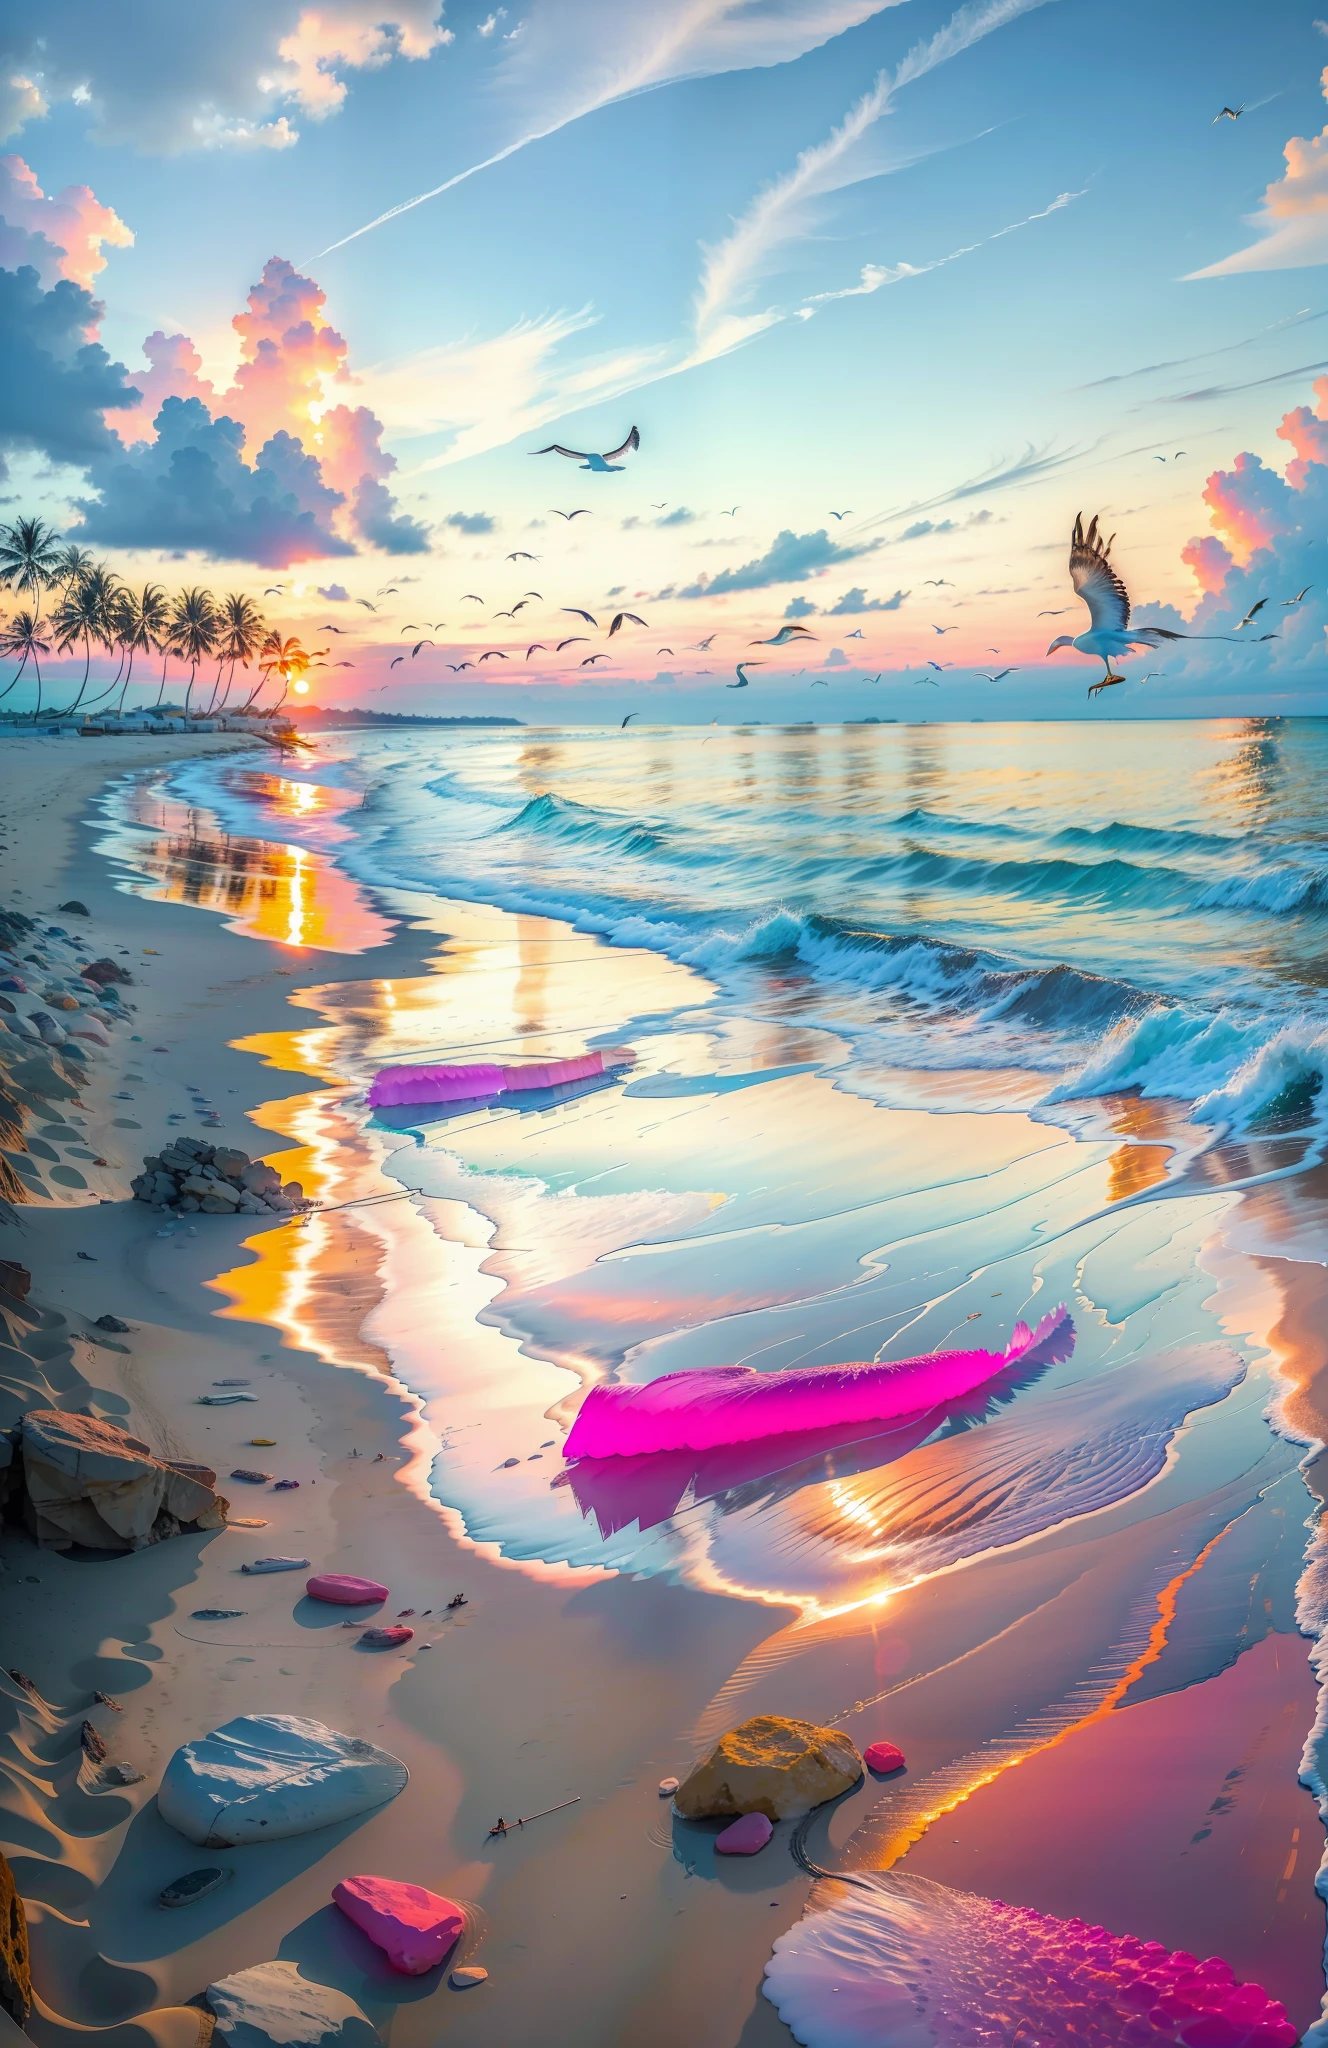 La playa está cubierta de coloridas piedras lisas transparentes.: 1.5, una puesta de sol absolutamente fascinante en la playa con una mezcla de naranja, rosa y amarillo en el cielo. El agua es cristalina., besando suavemente la orilla, y la playa de arena blanca se extiende hasta donde alcanza la vista. La escena es dinámica e impresionante., con gaviotas volando alto en el cielo y palmeras balanceándose suavemente. Empápate del ambiente relajante y deja que la tranquilidad te envuelva.